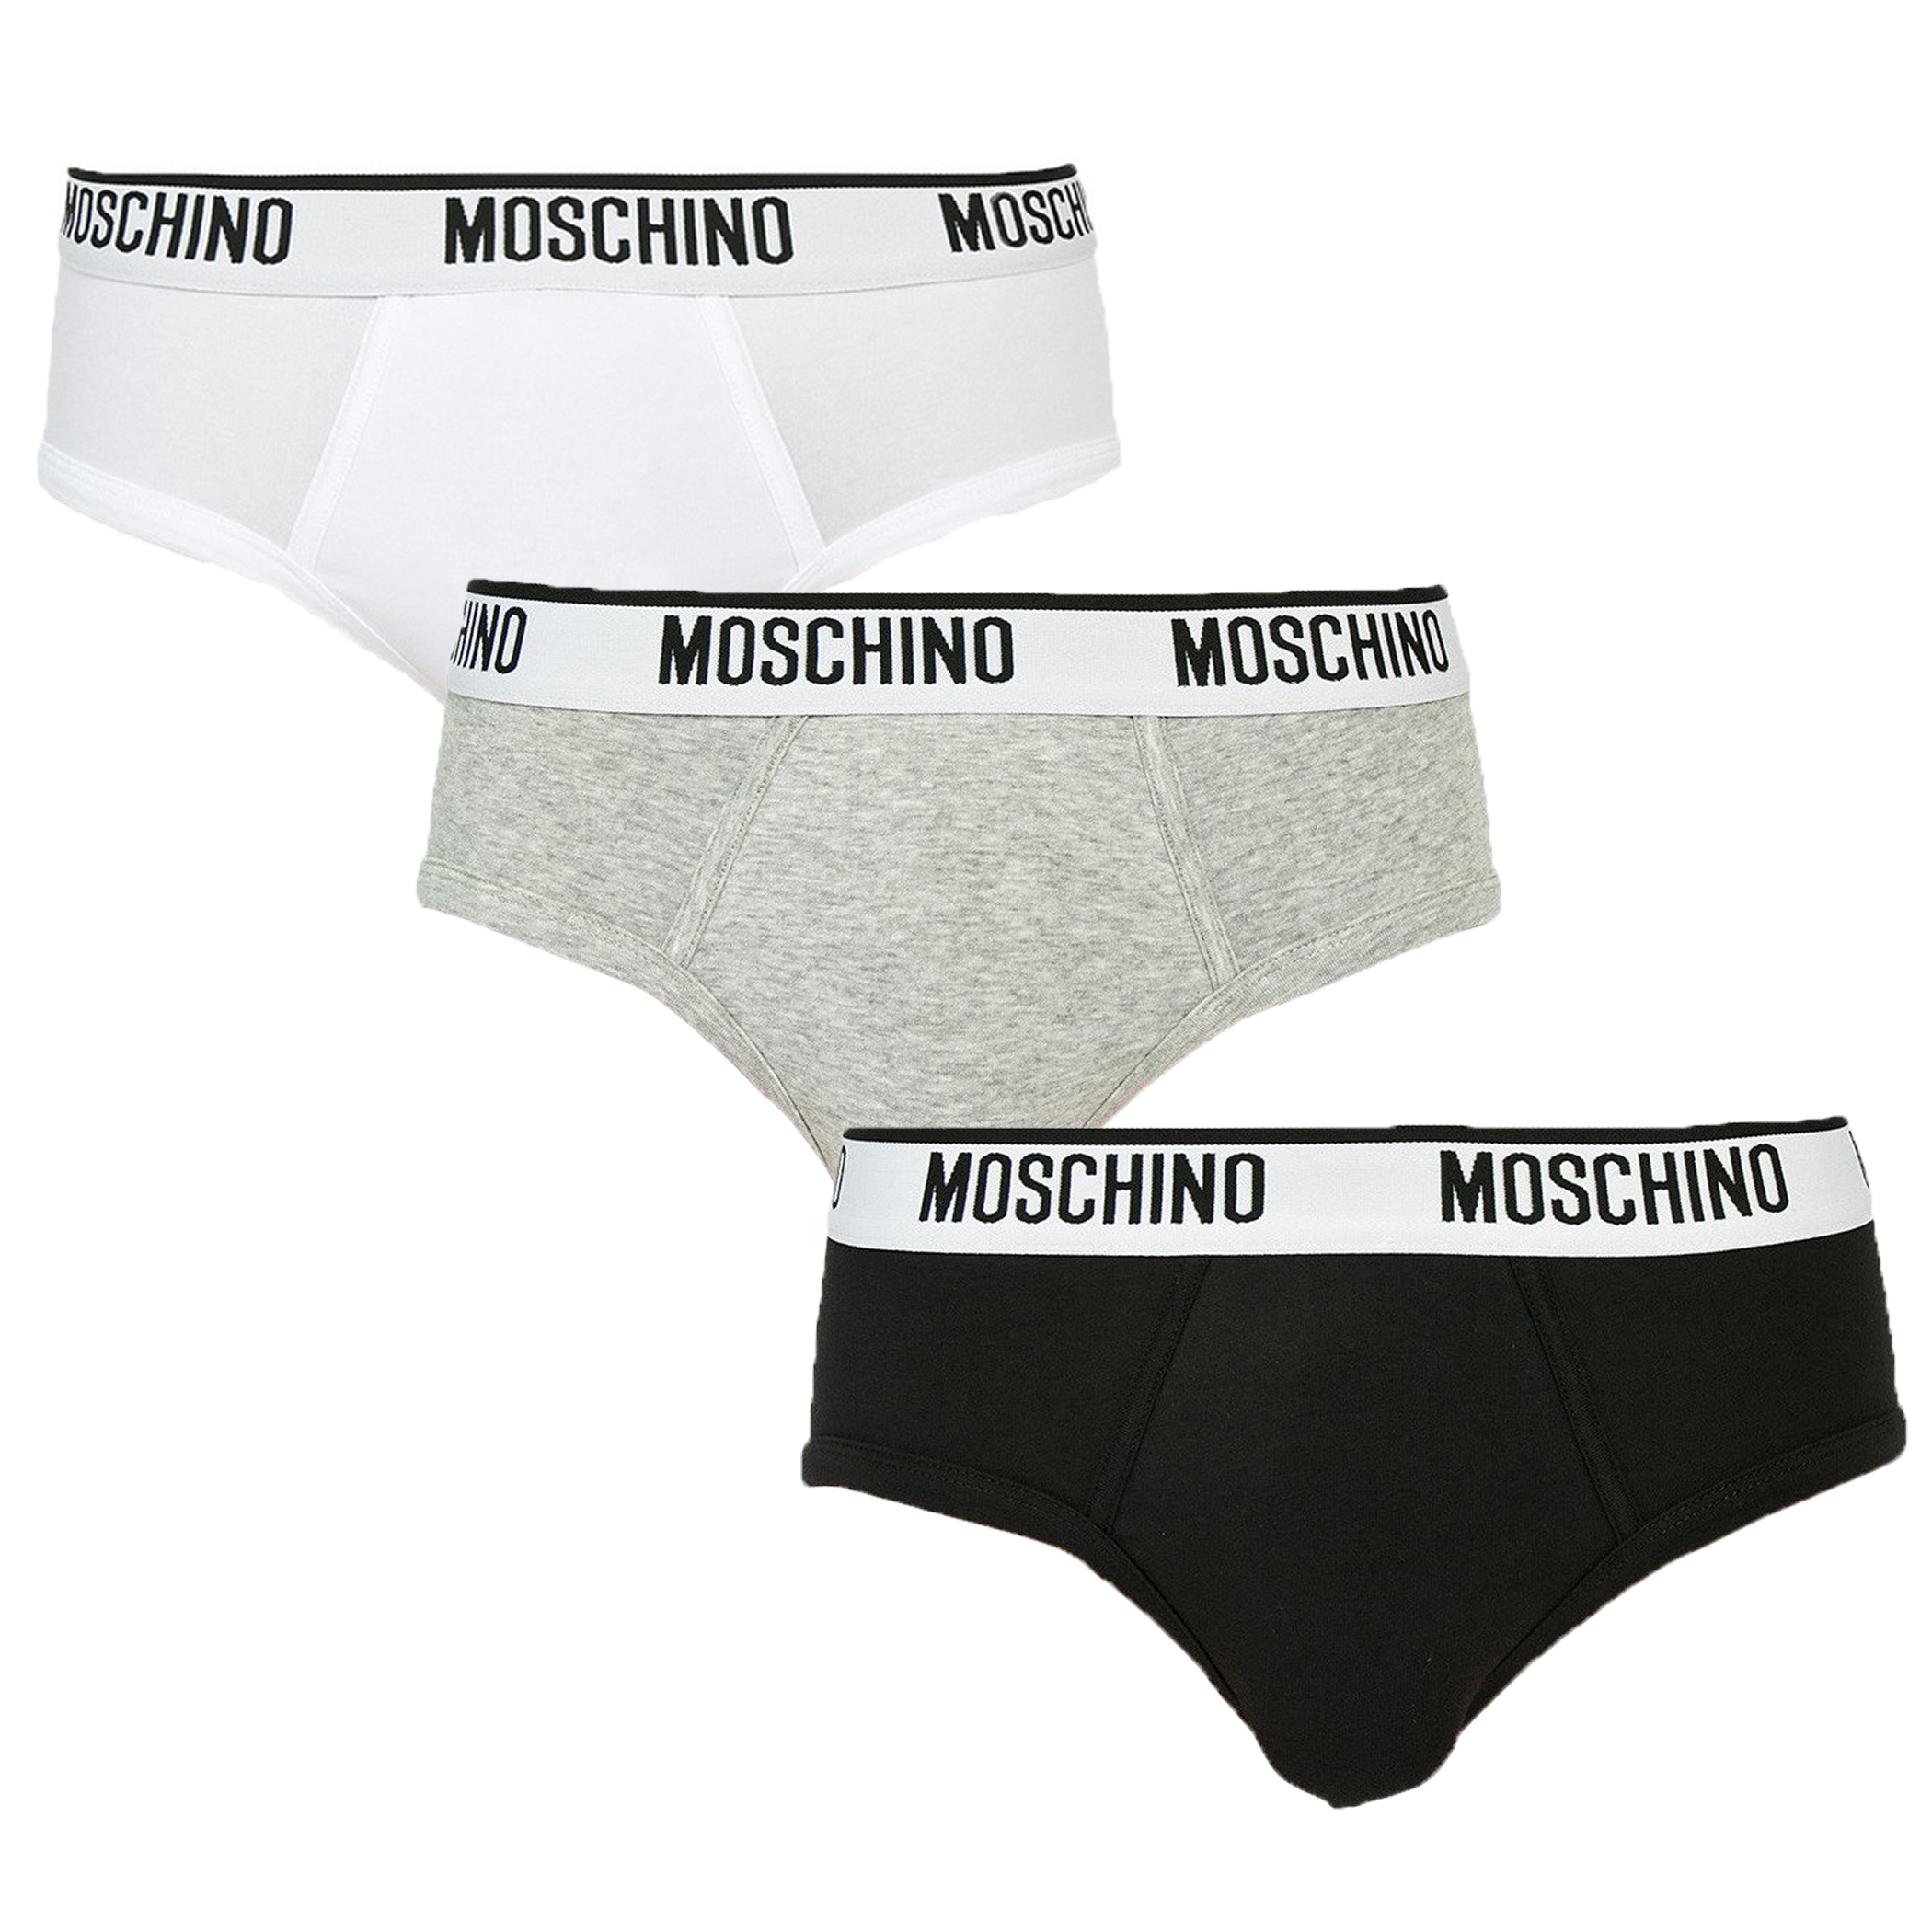 Moschino Men's Brief Black Grey White Presentation Box Underwear | eBay